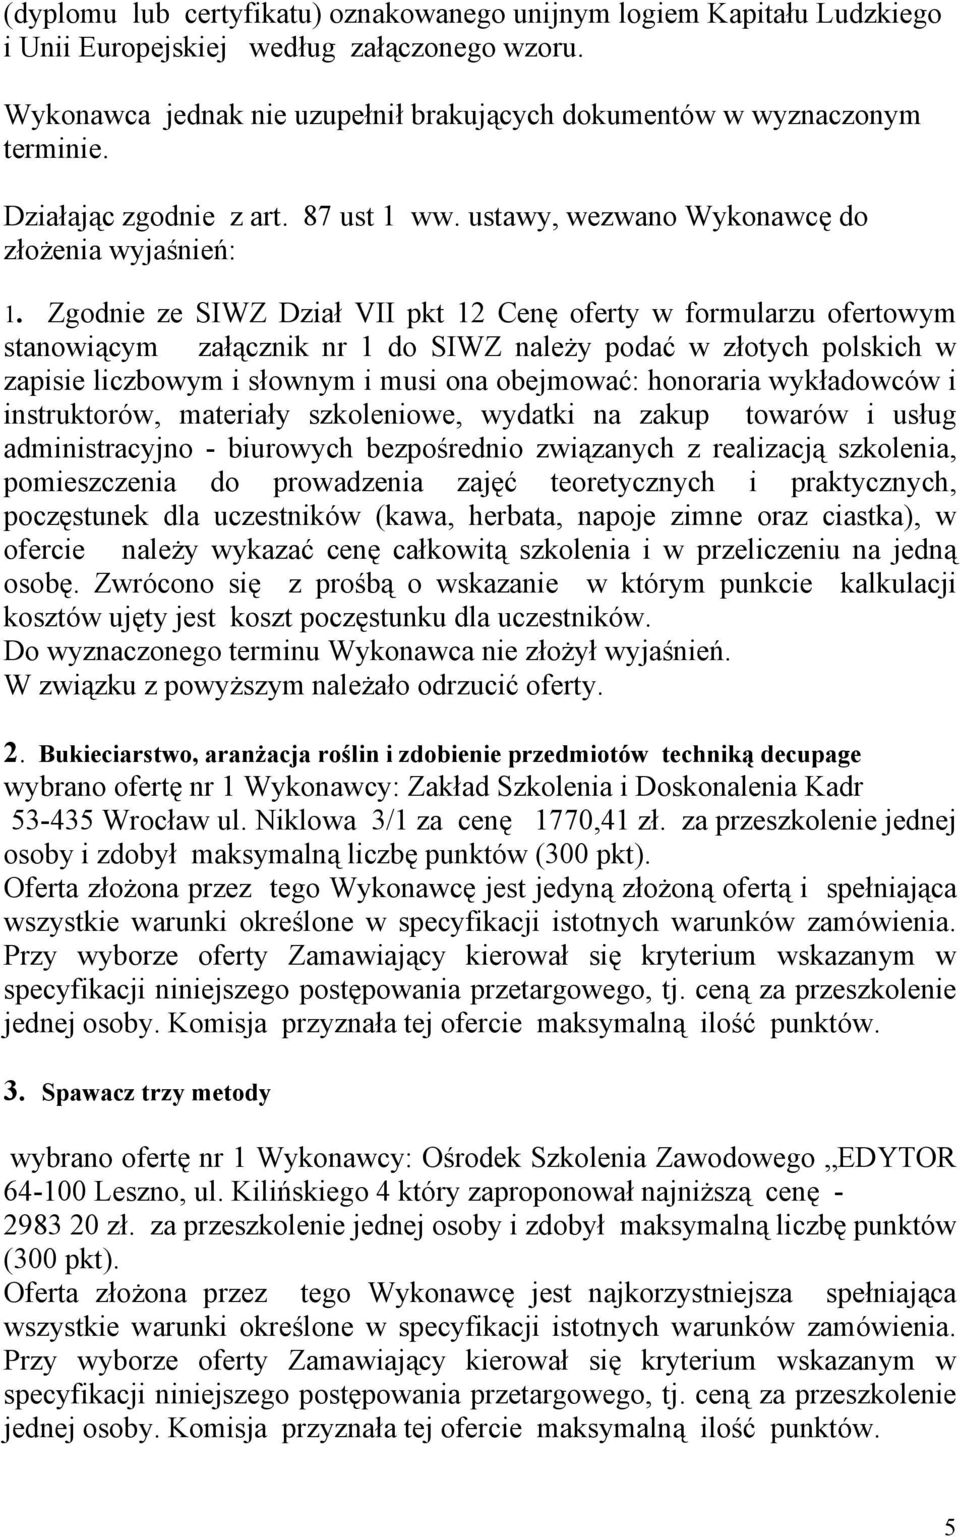 Zgodnie ze SIWZ Dział VII pkt 12 Cenę w formularzu ofertowym stanowiącym załącznik nr 1 do SIWZ należy podać w złotych polskich w zapisie liczbowym i słownym i musi ona obejmować: honoraria